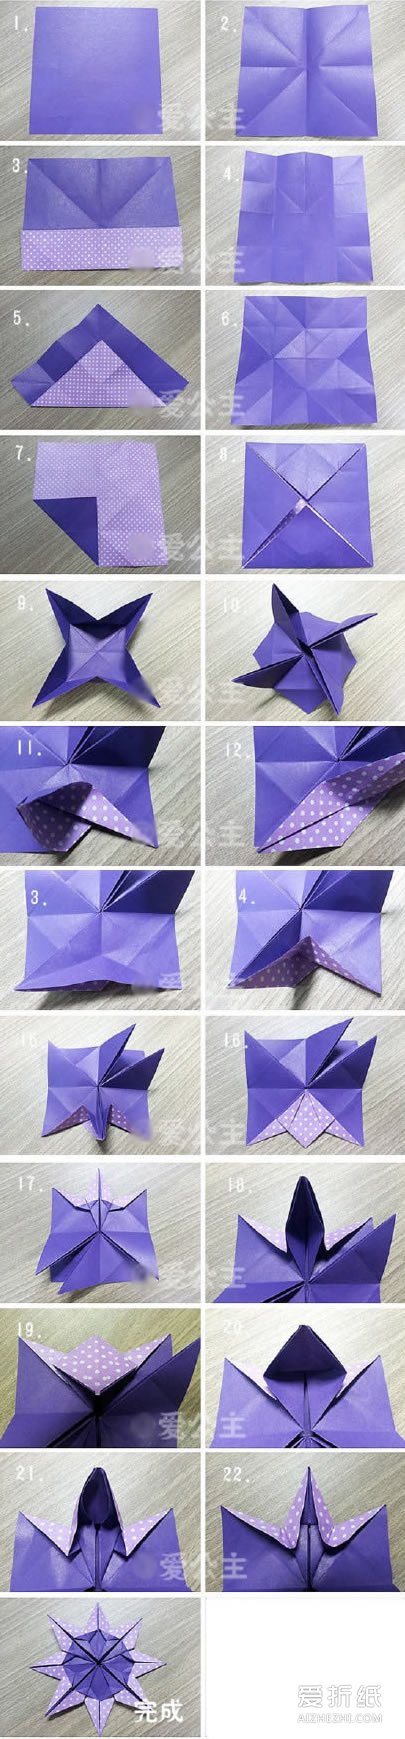 如何折纸八角星方法 折纸星星的方法图解- www.aizhezhi.com